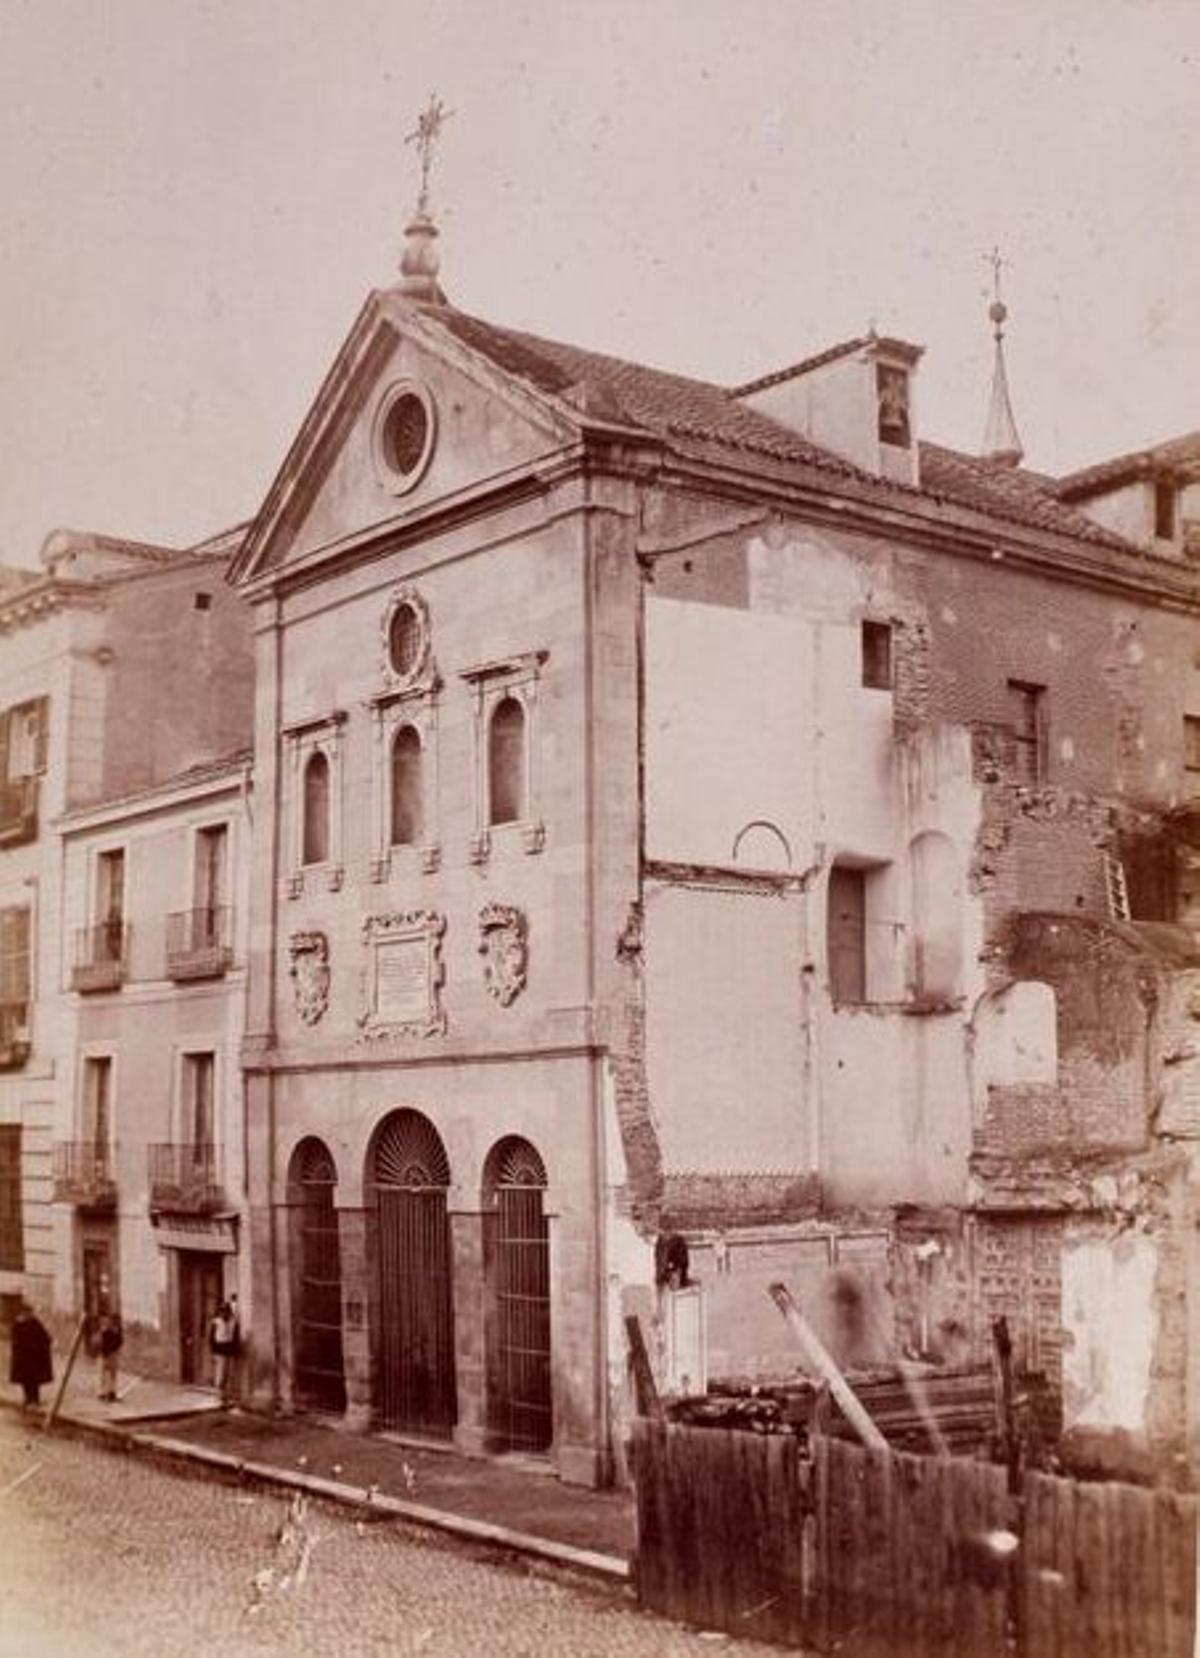 La iglesia de Santa Cruz sufrió dos incendios en 1620 y 1763.